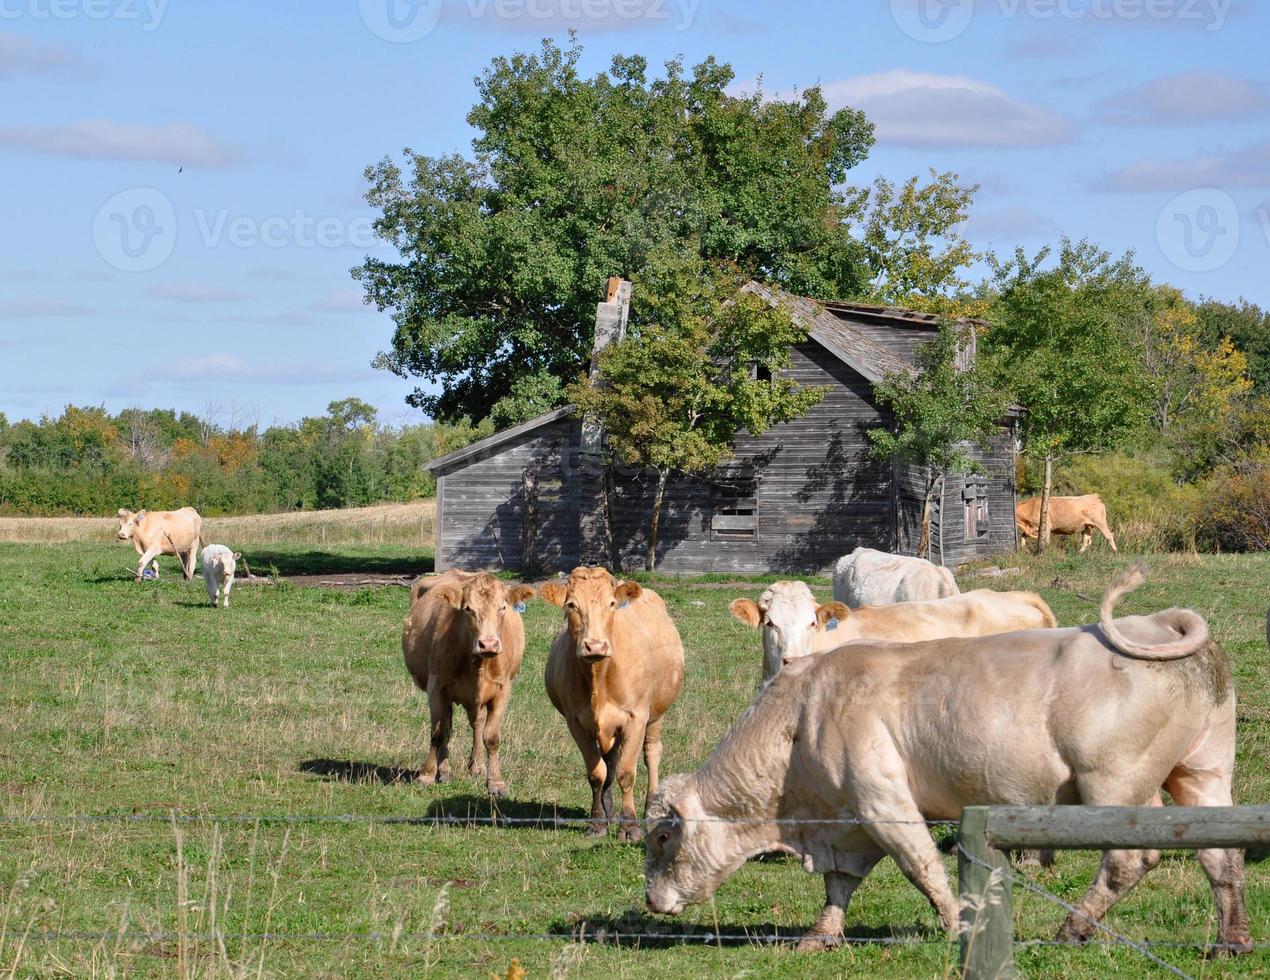 curieux troupeau de bovins s'approche d'une clôture photo